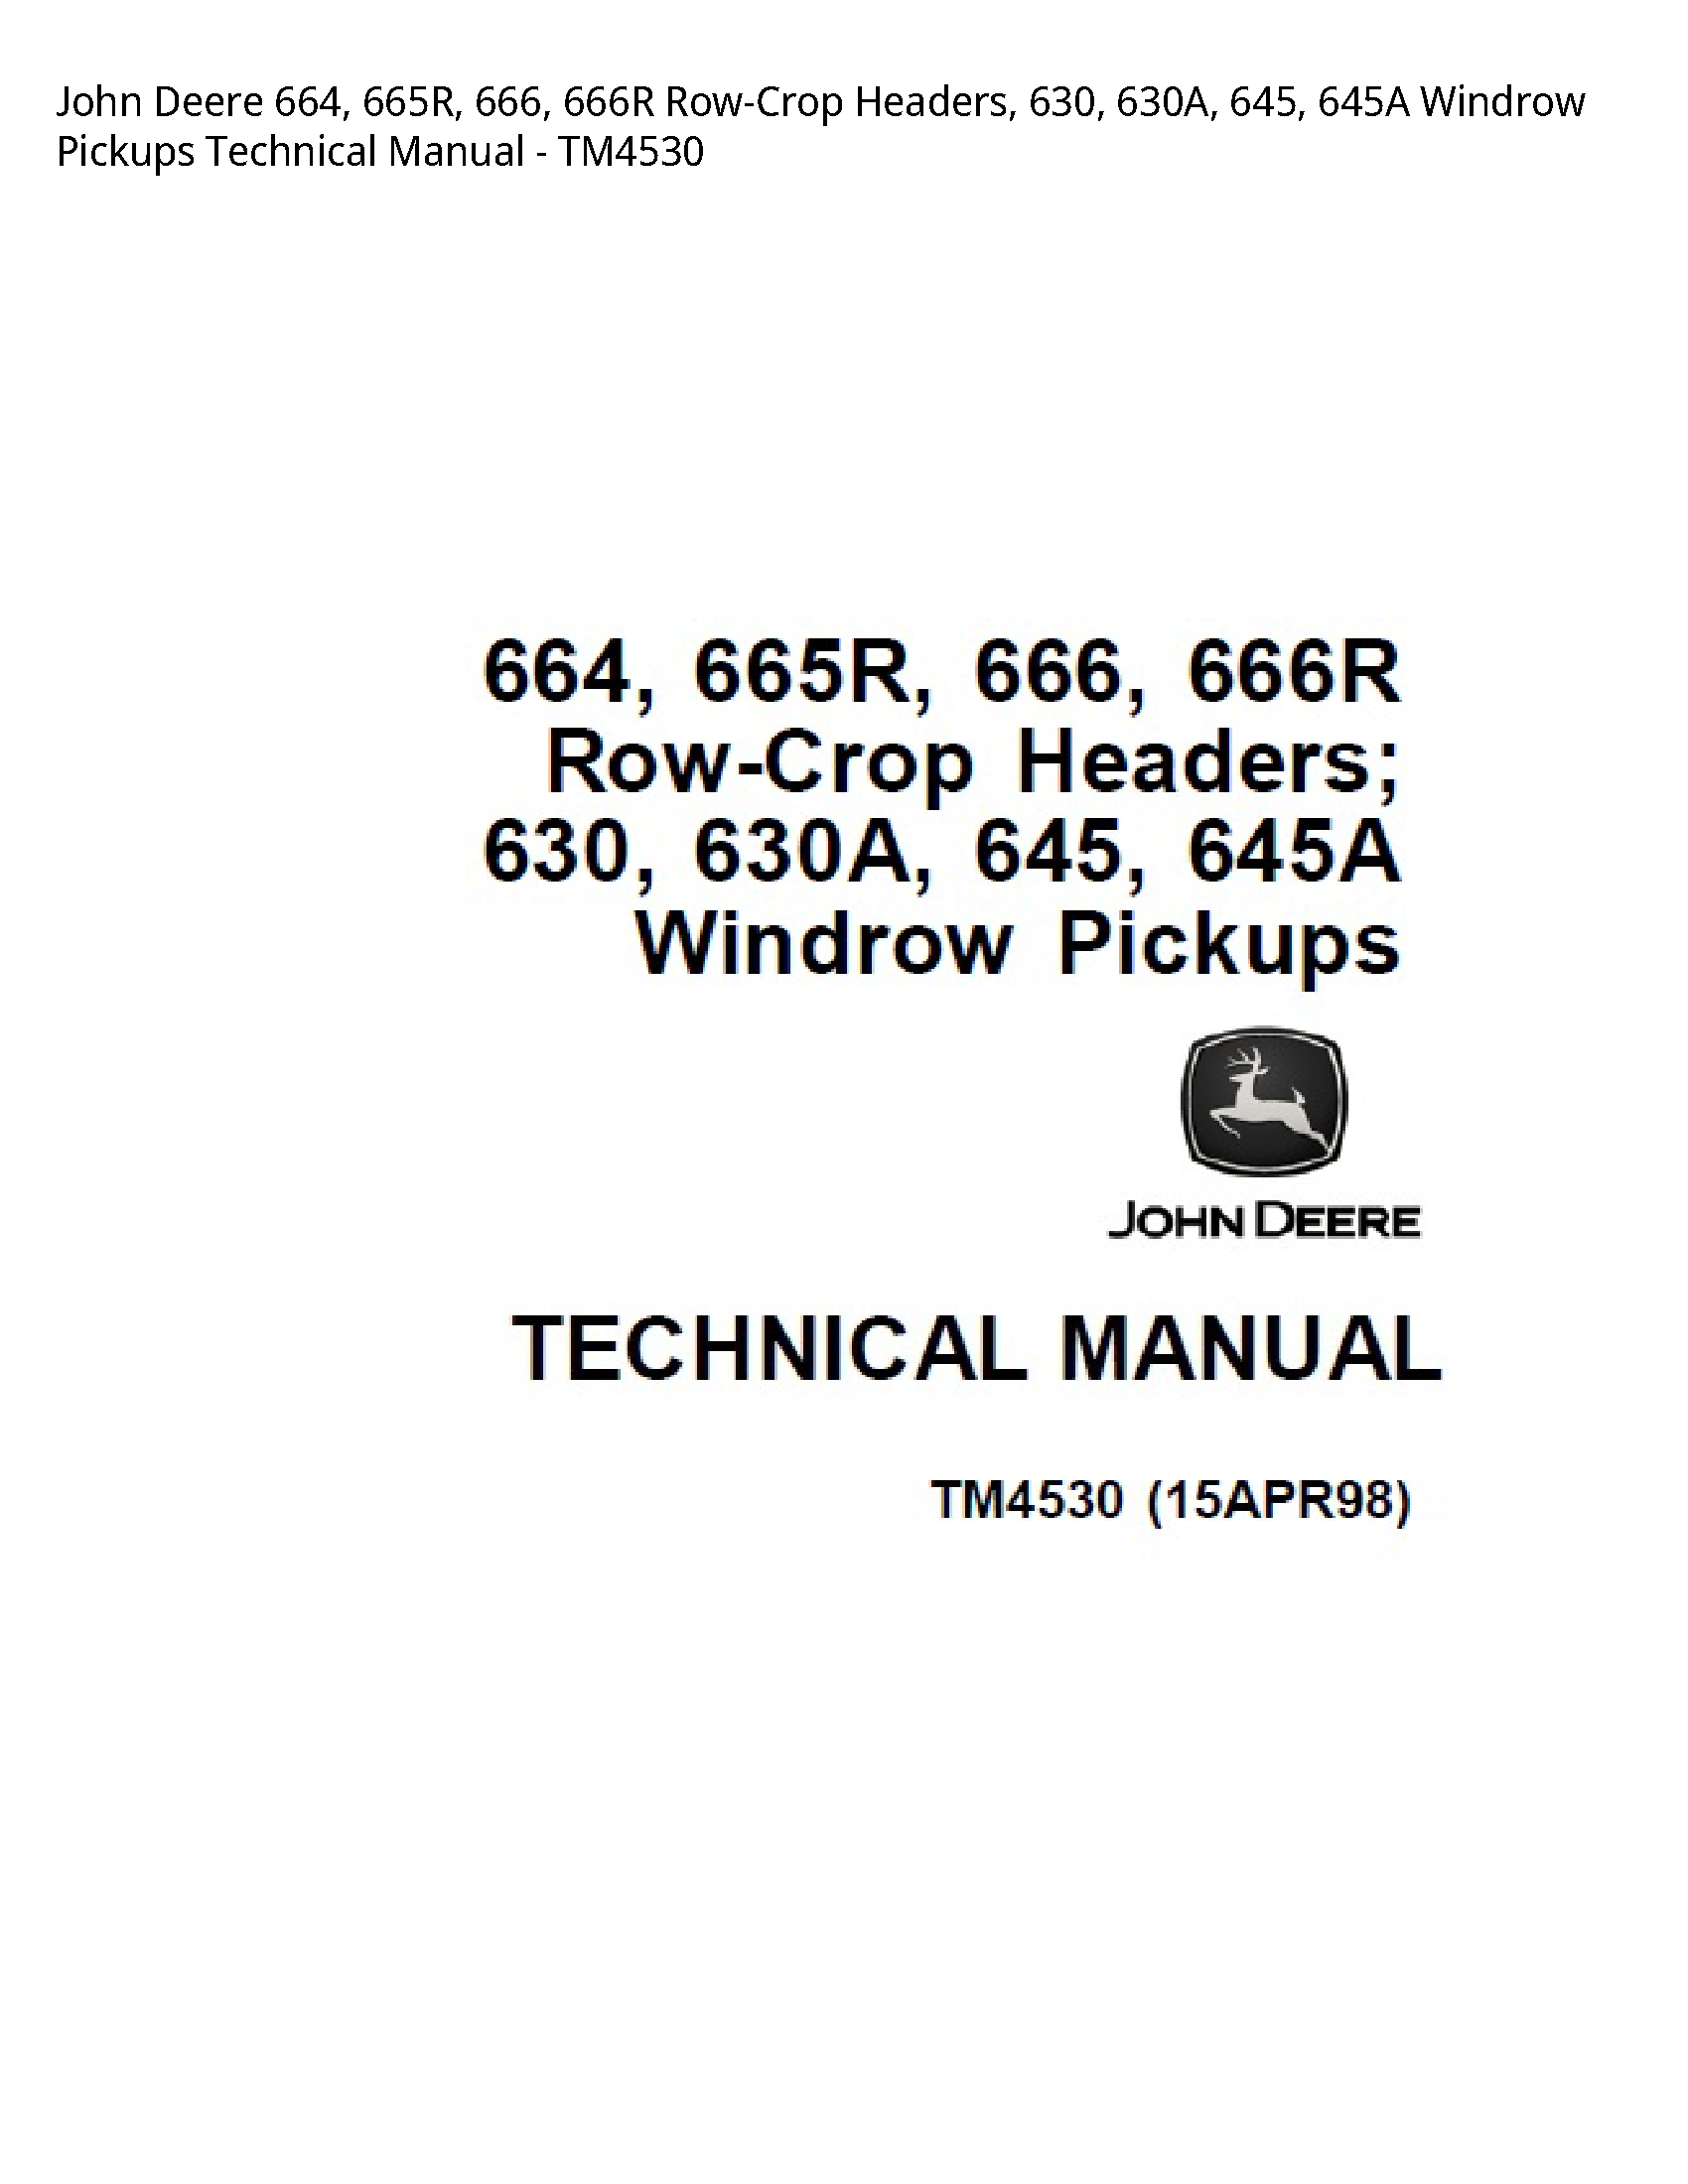 John Deere 664 Row-Crop Headers manual